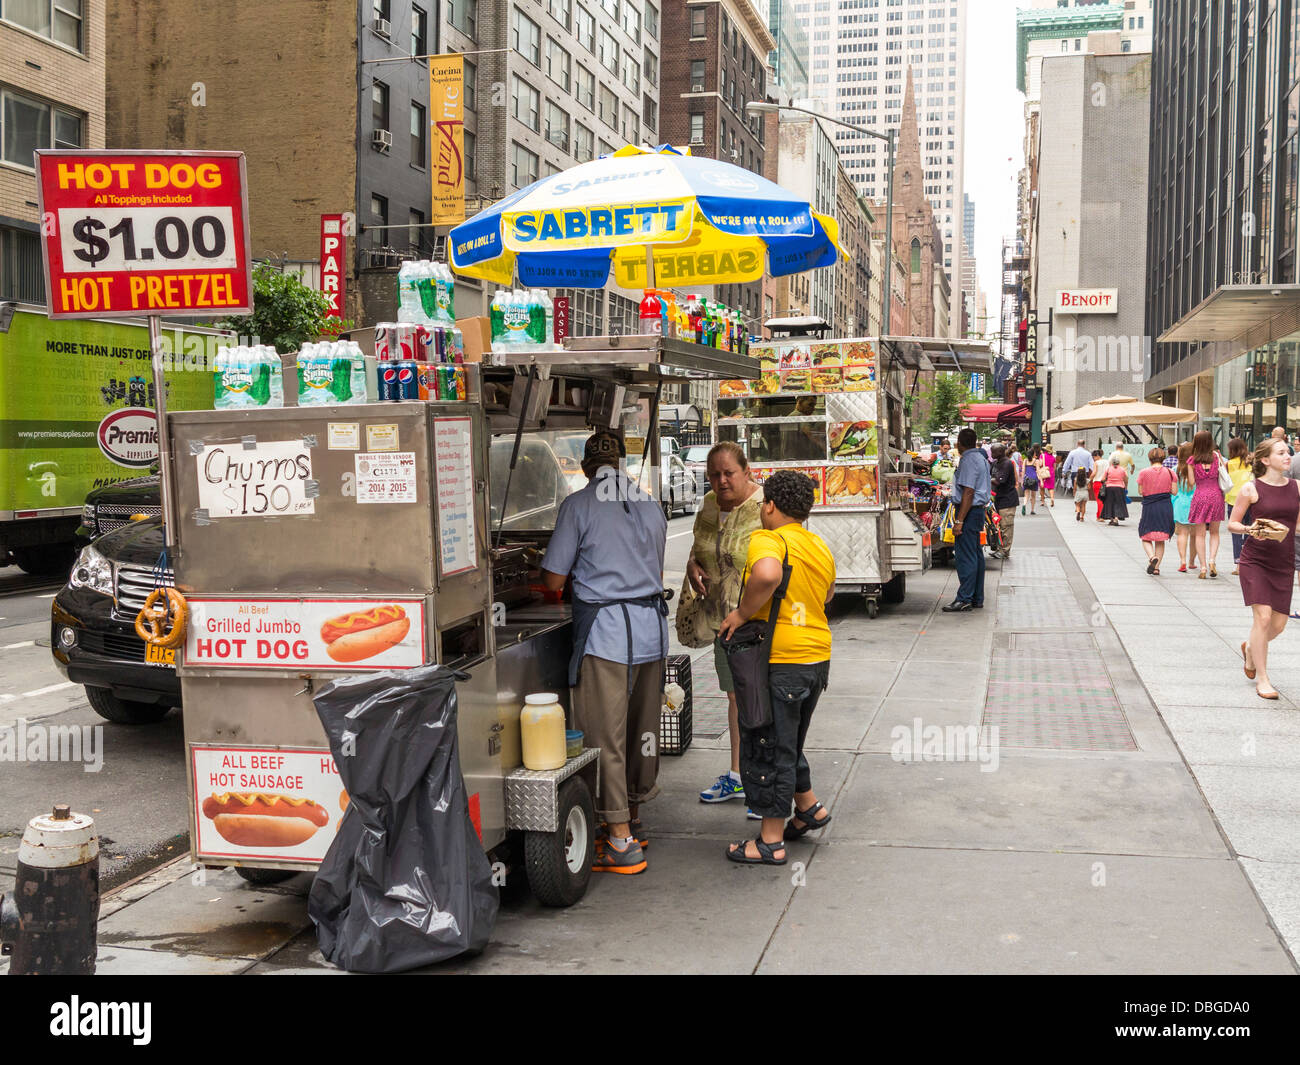 New York traditionnel street food cars / fournisseurs qui desservent des clients dans le centre-ville de New York City Banque D'Images